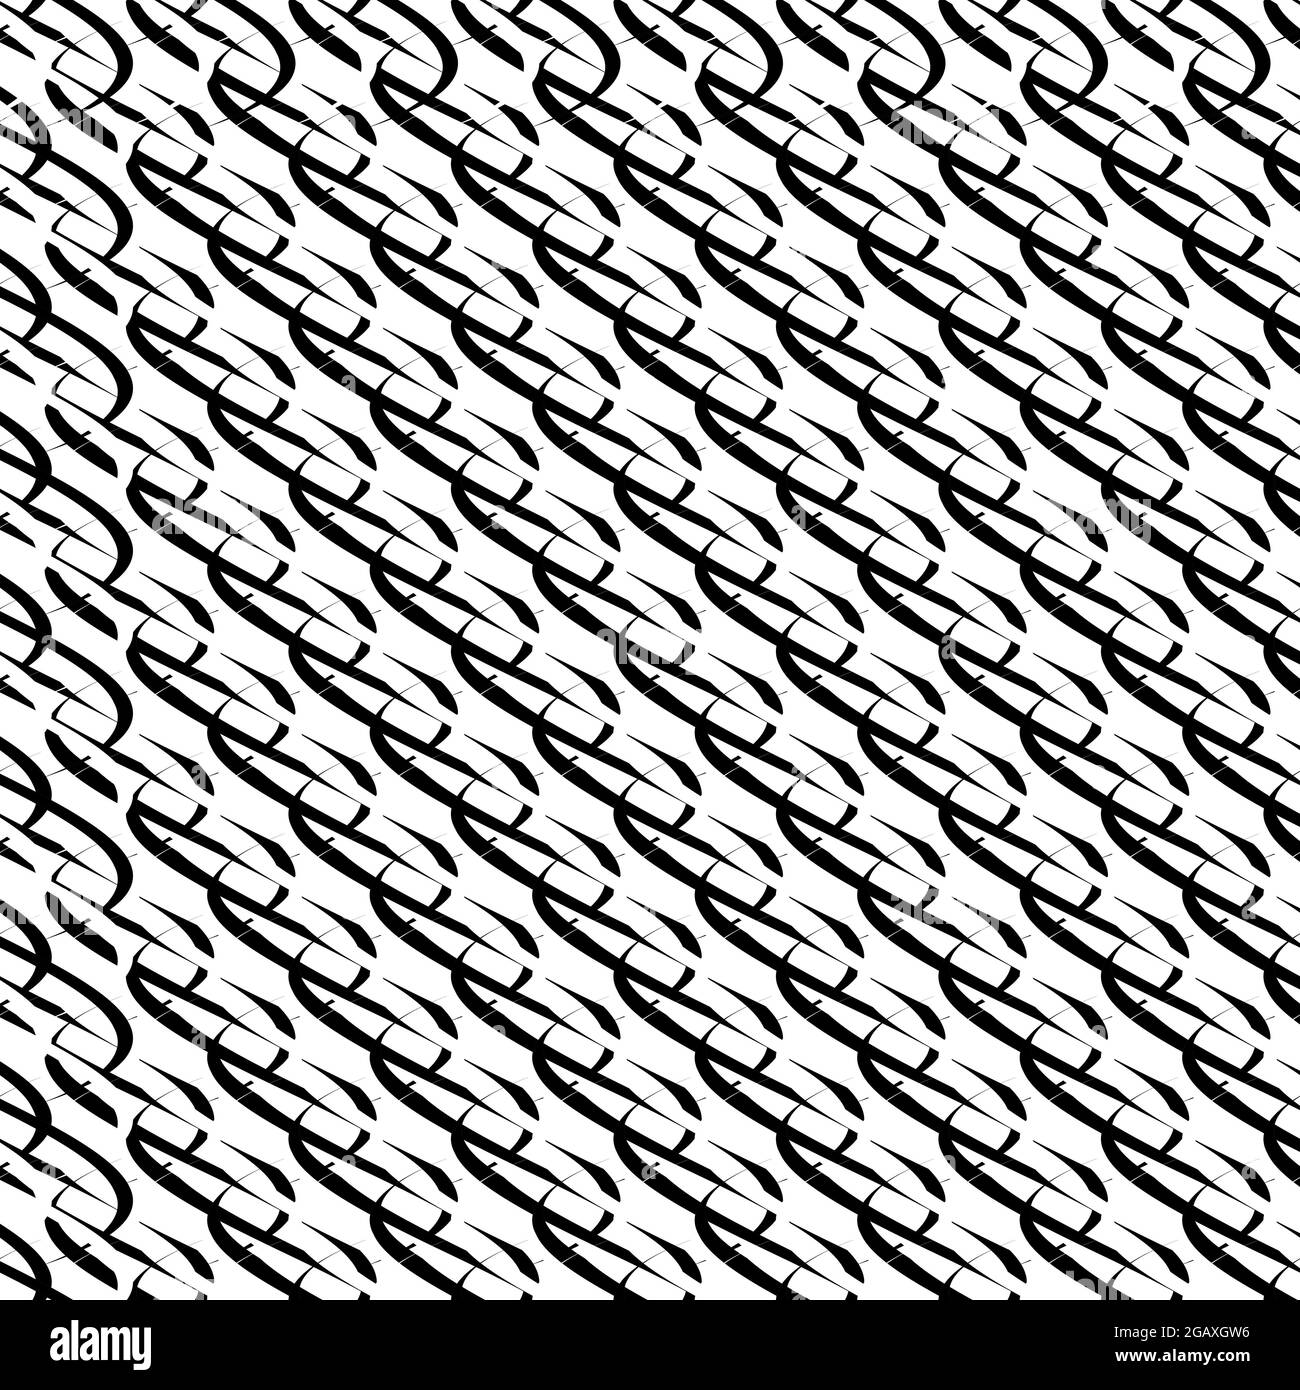 Schwarz-Weiß, monochromes, nahtlos wiederholbares geometrisches Muster, Textur, Hintergrund, Hintergrund – Vektorgrafik, Clip-Art-Grafiken Stock Vektor